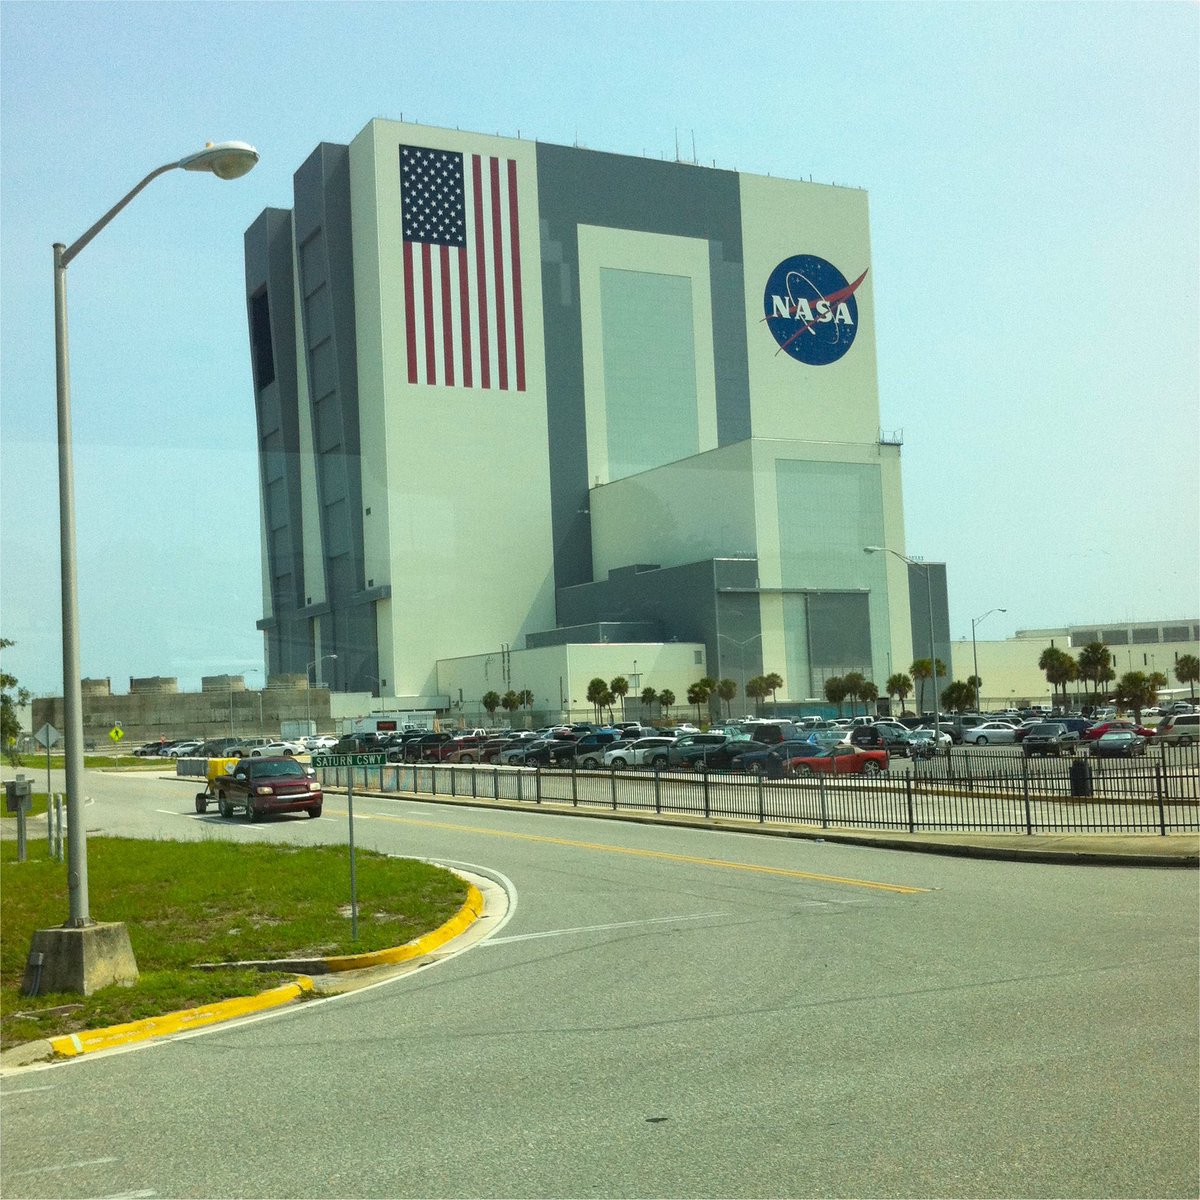 Die Mondrakete Saturn V wurde im sogenannten VAB auf den Start vorbereitet. Der mit Sternen gespickte Teil der US-Flagge auf diesem riesigen Gebäude ist so groß wie ein Basketballfeld.

#Eureka #Quiz #Apollo11 #Apollo50th 

en.m.wikipedia.org/wiki/Vehicle_A…